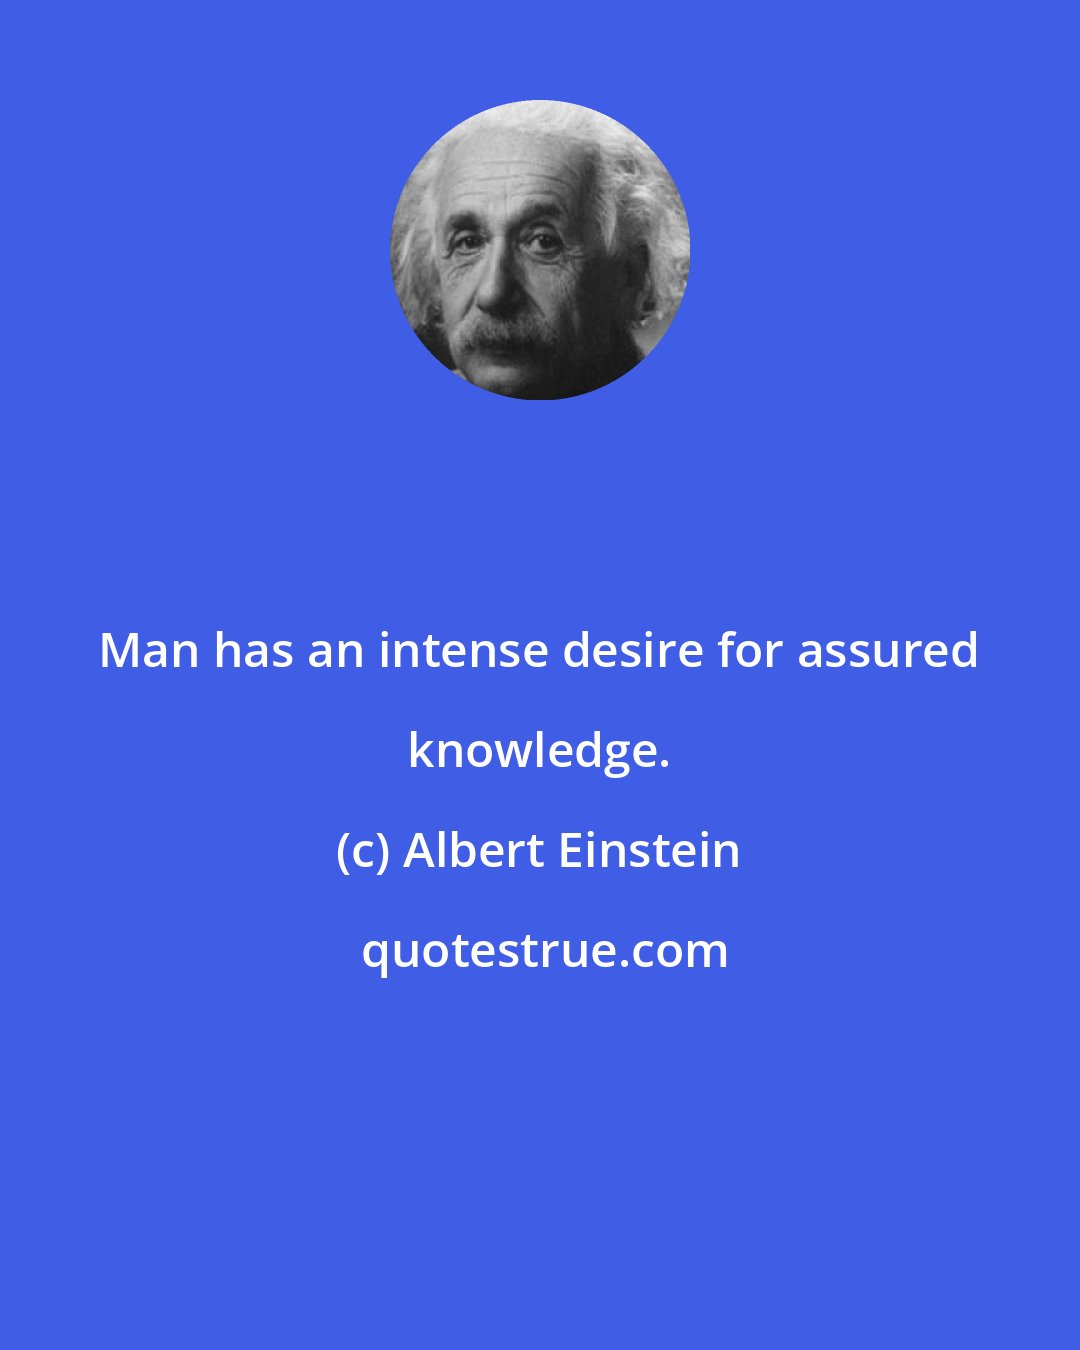 Albert Einstein: Man has an intense desire for assured knowledge.